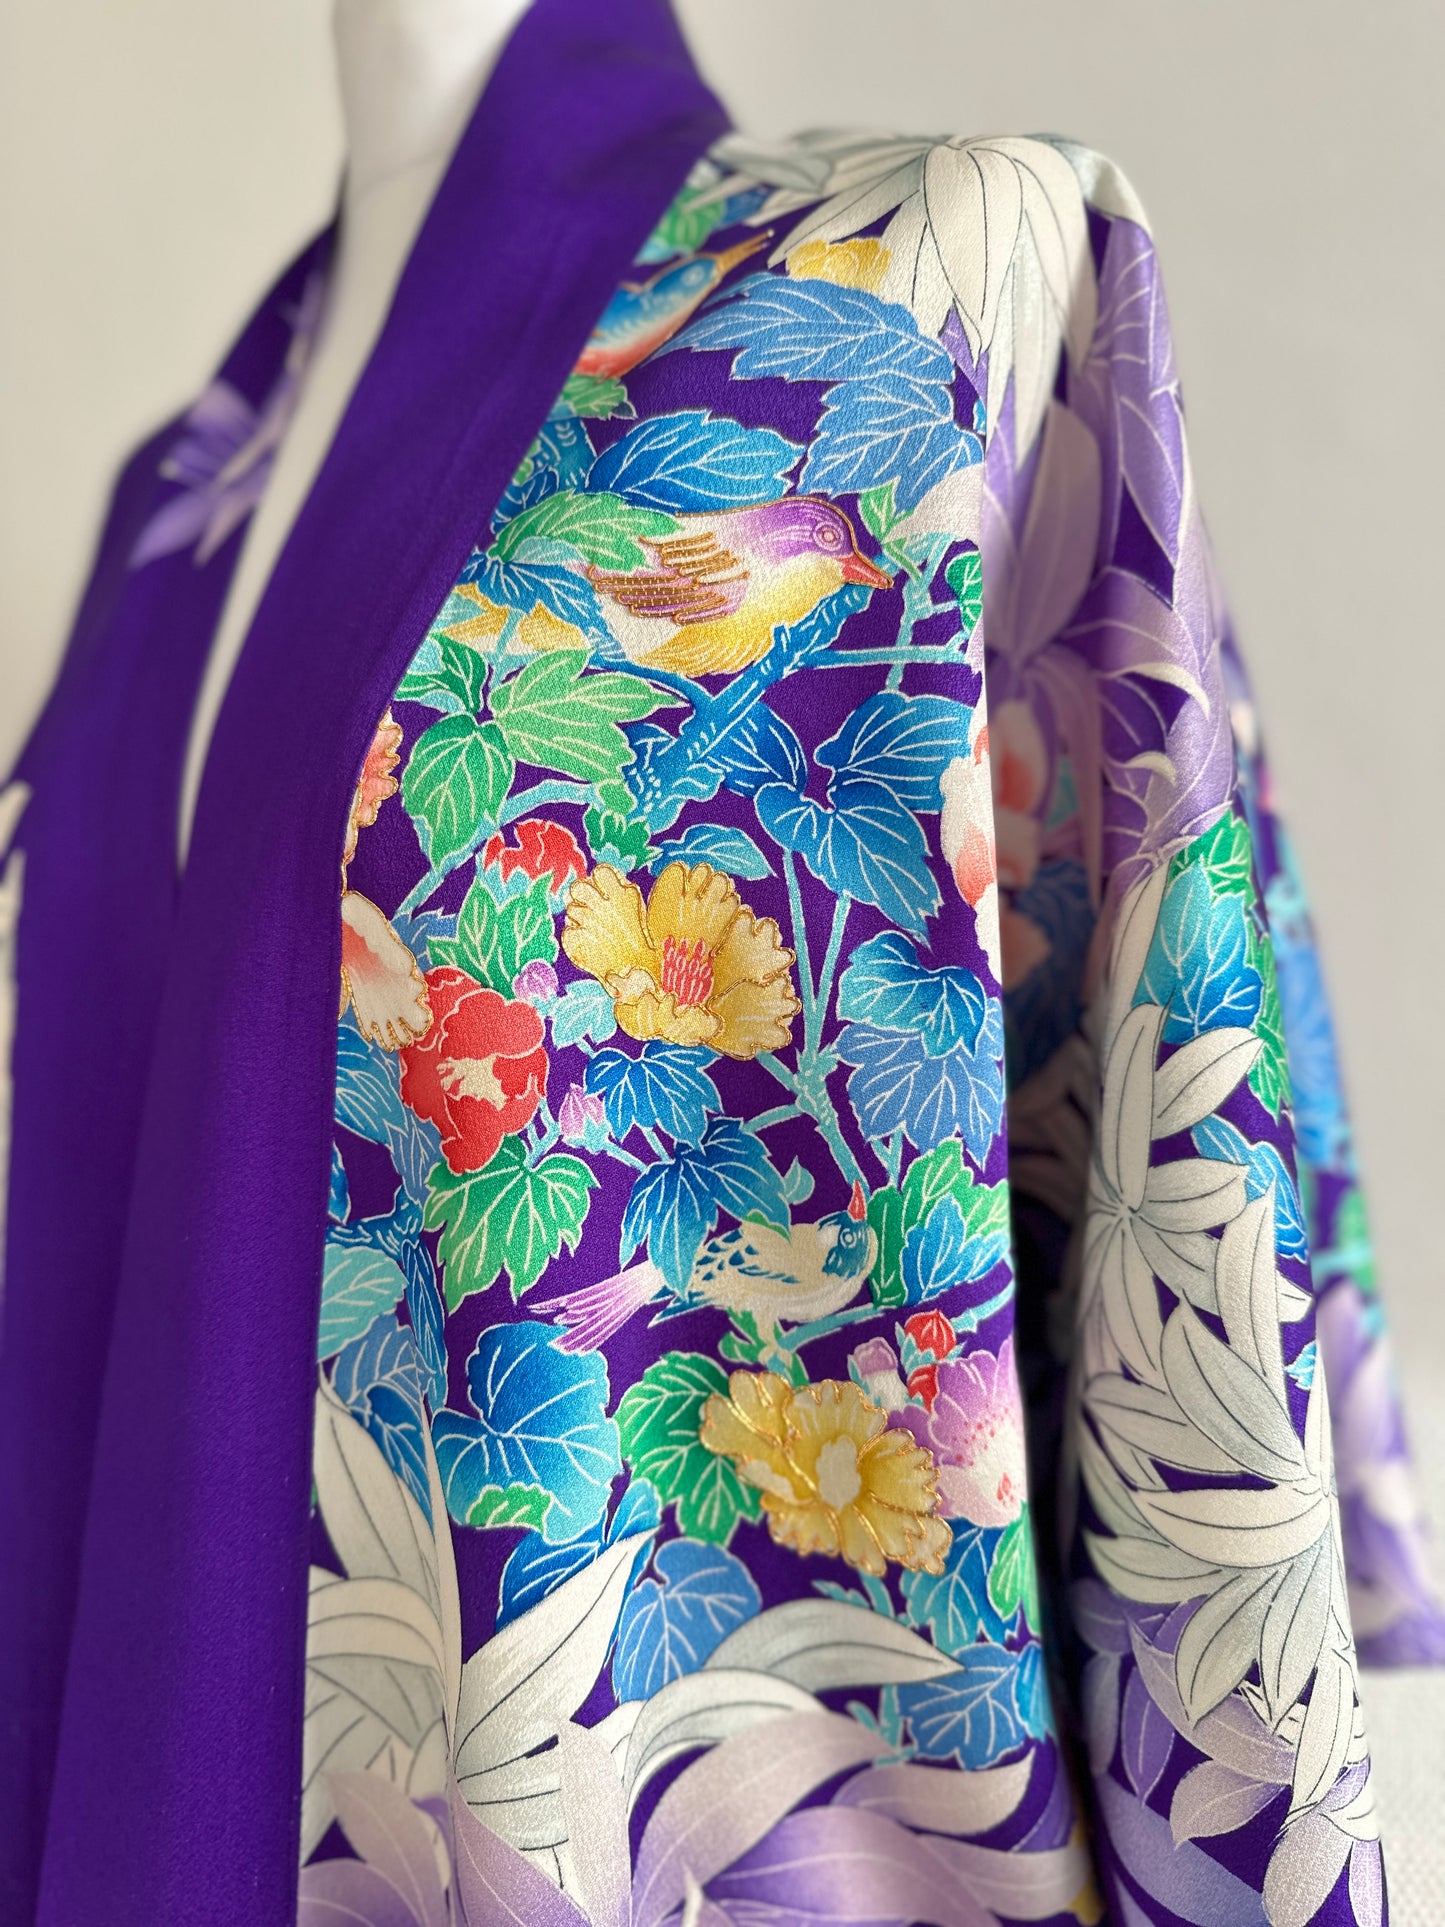 【Purple, klassieke bloemen】 Happi -jas ＜ Uitstekend ・ zijde ＞ voor mannen, voor vrouwen, Japanse Kimono, Japan unisexese kleding, unisex, Japanse geschenken, originele ontwerpen